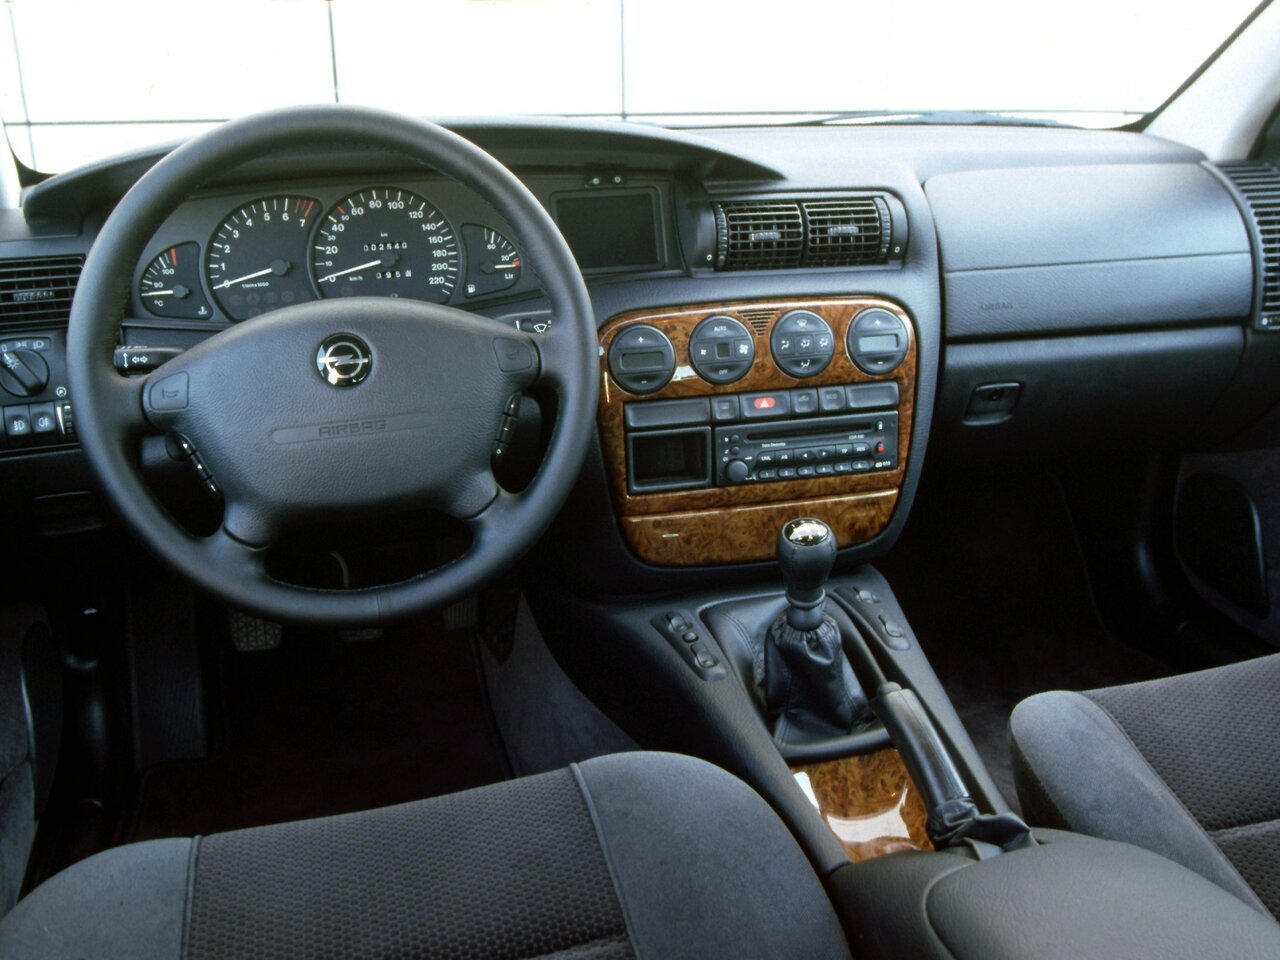 Opel Omega b 1994-1999. Opel Omega b 1994 Interior. Opel Omega b 1998. Opel Omega b Interior. Омега б автомат